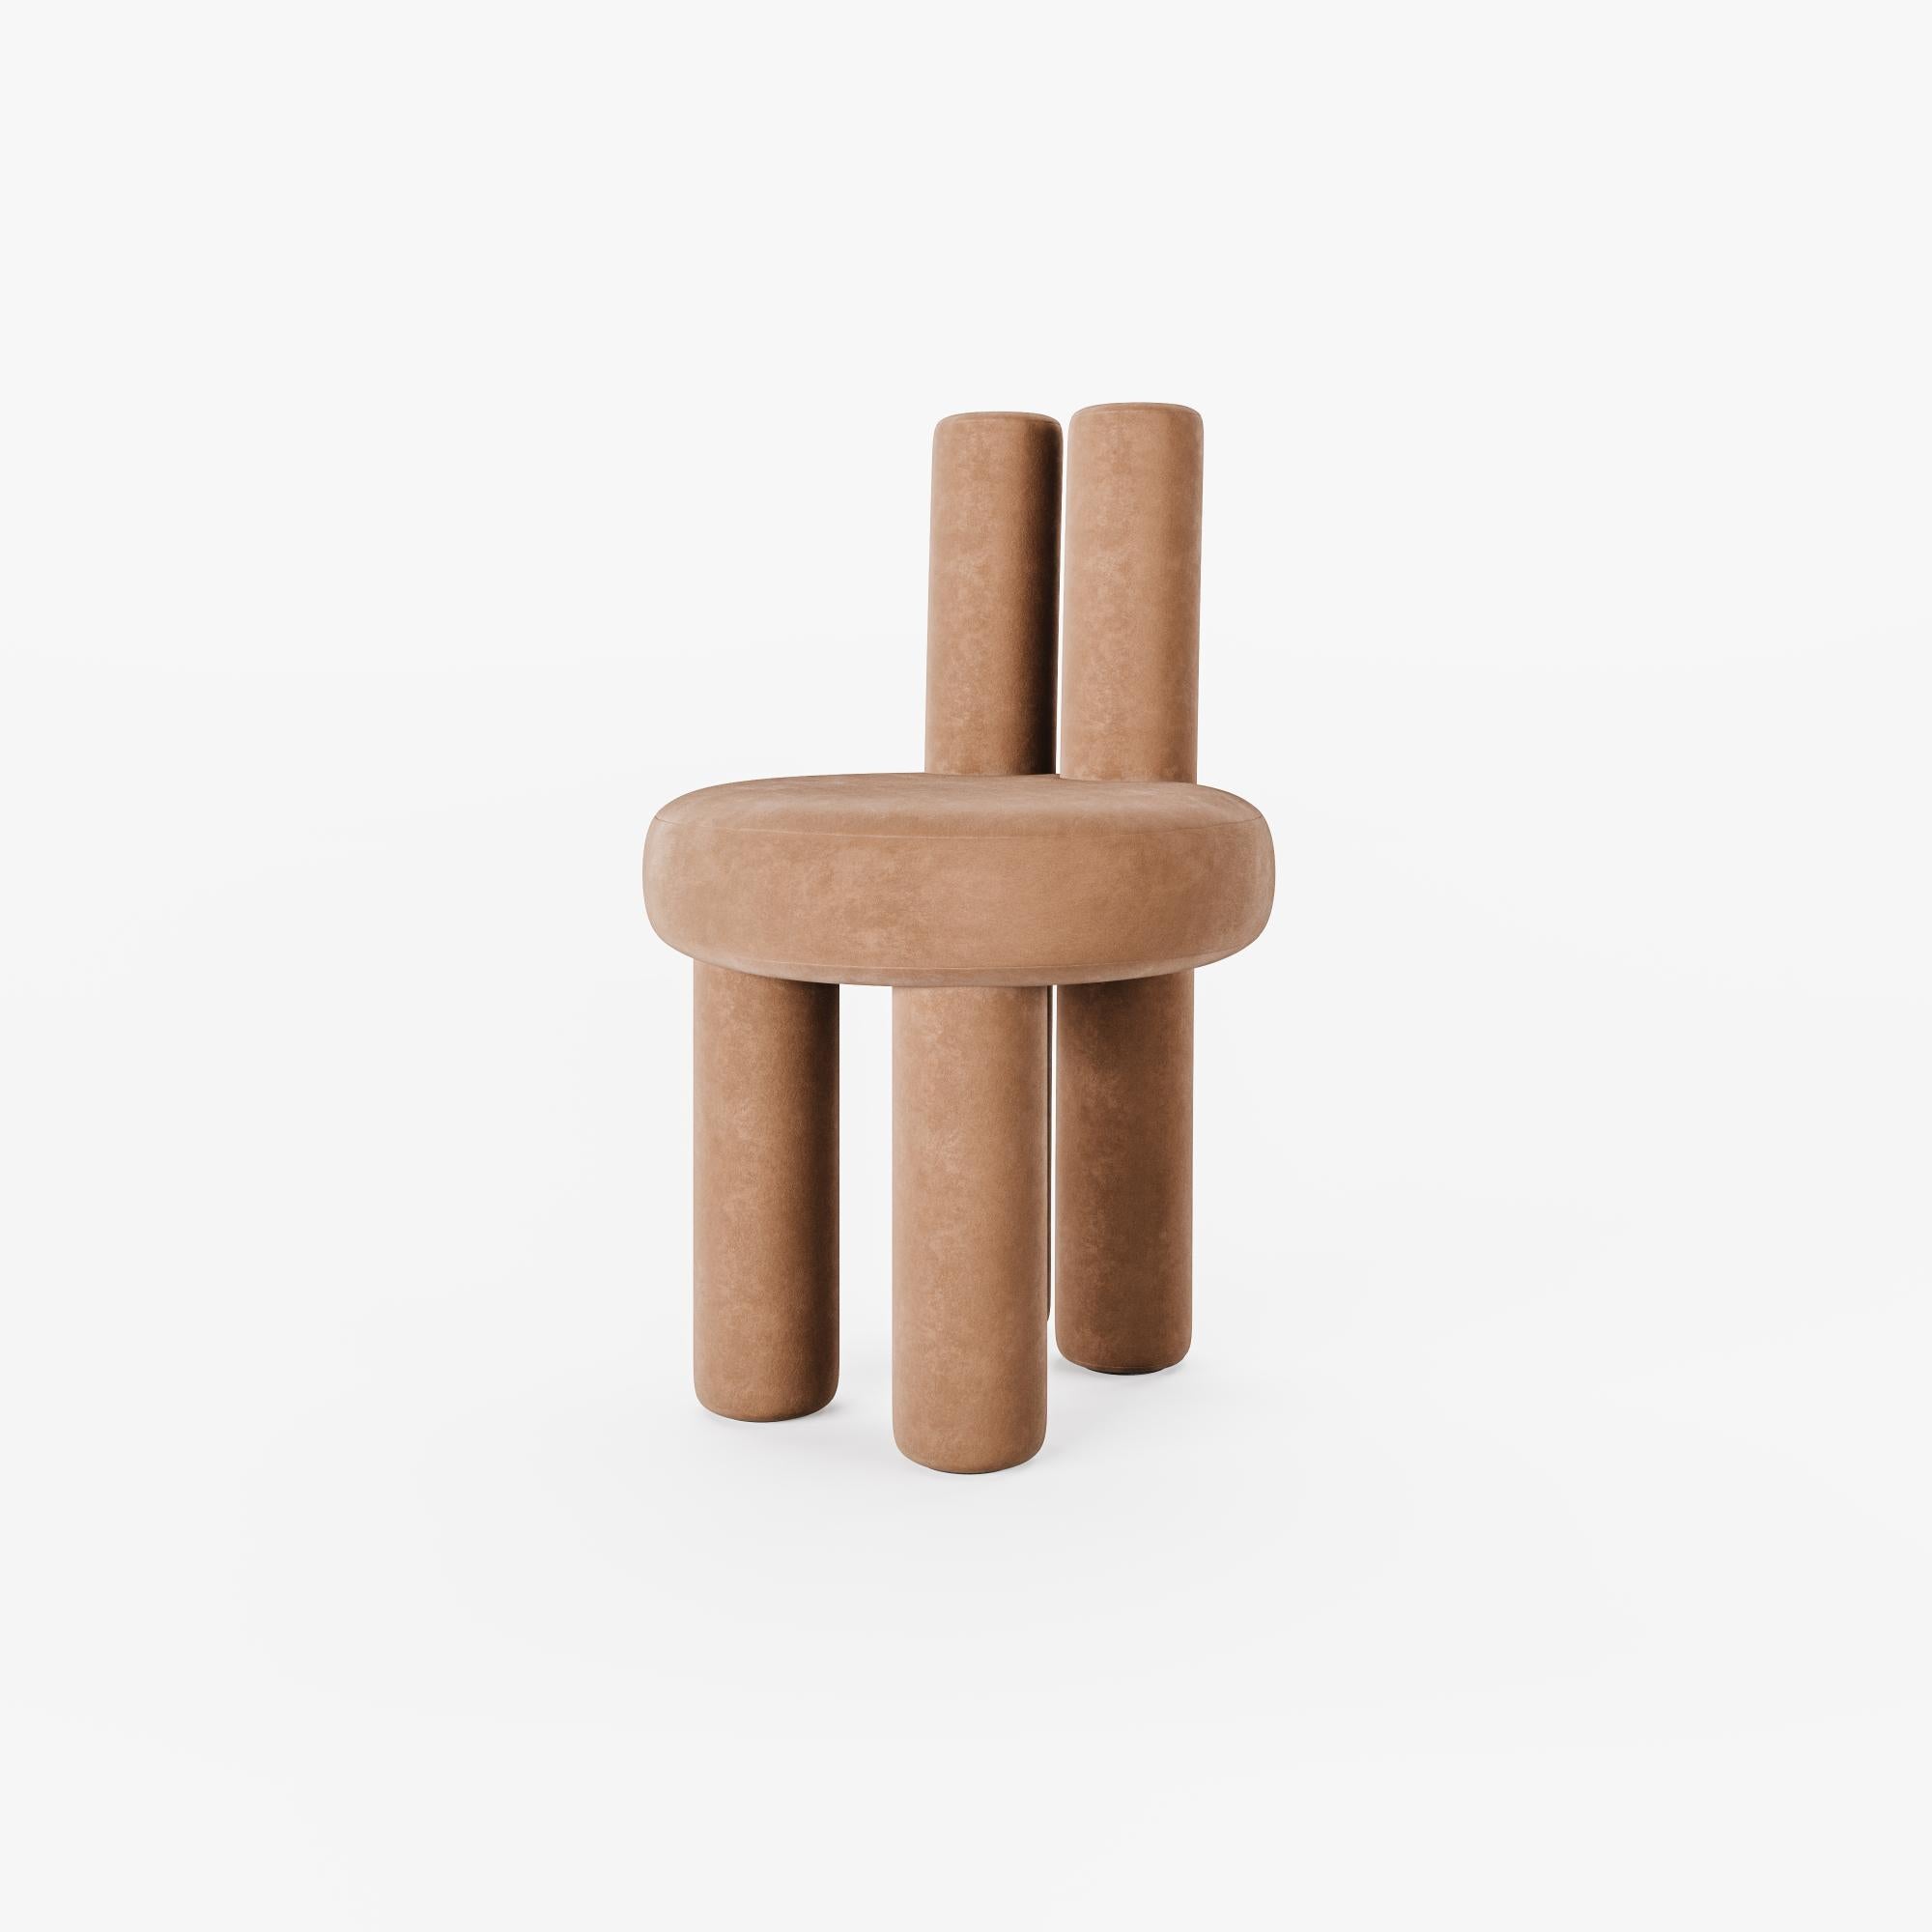 Satz von 2 Salvador-Stühlen aus Terrakota von Nelson Araujo
Abmessungen: T 47 x H 75 cm
MATERIALIEN: Holz, Samt und Schaumstoff.
Auch verfügbar: Misty Beige Farbe verfügbar,

Nelson de Araújo, hat einen Abschluss in Produktdesign. Seine